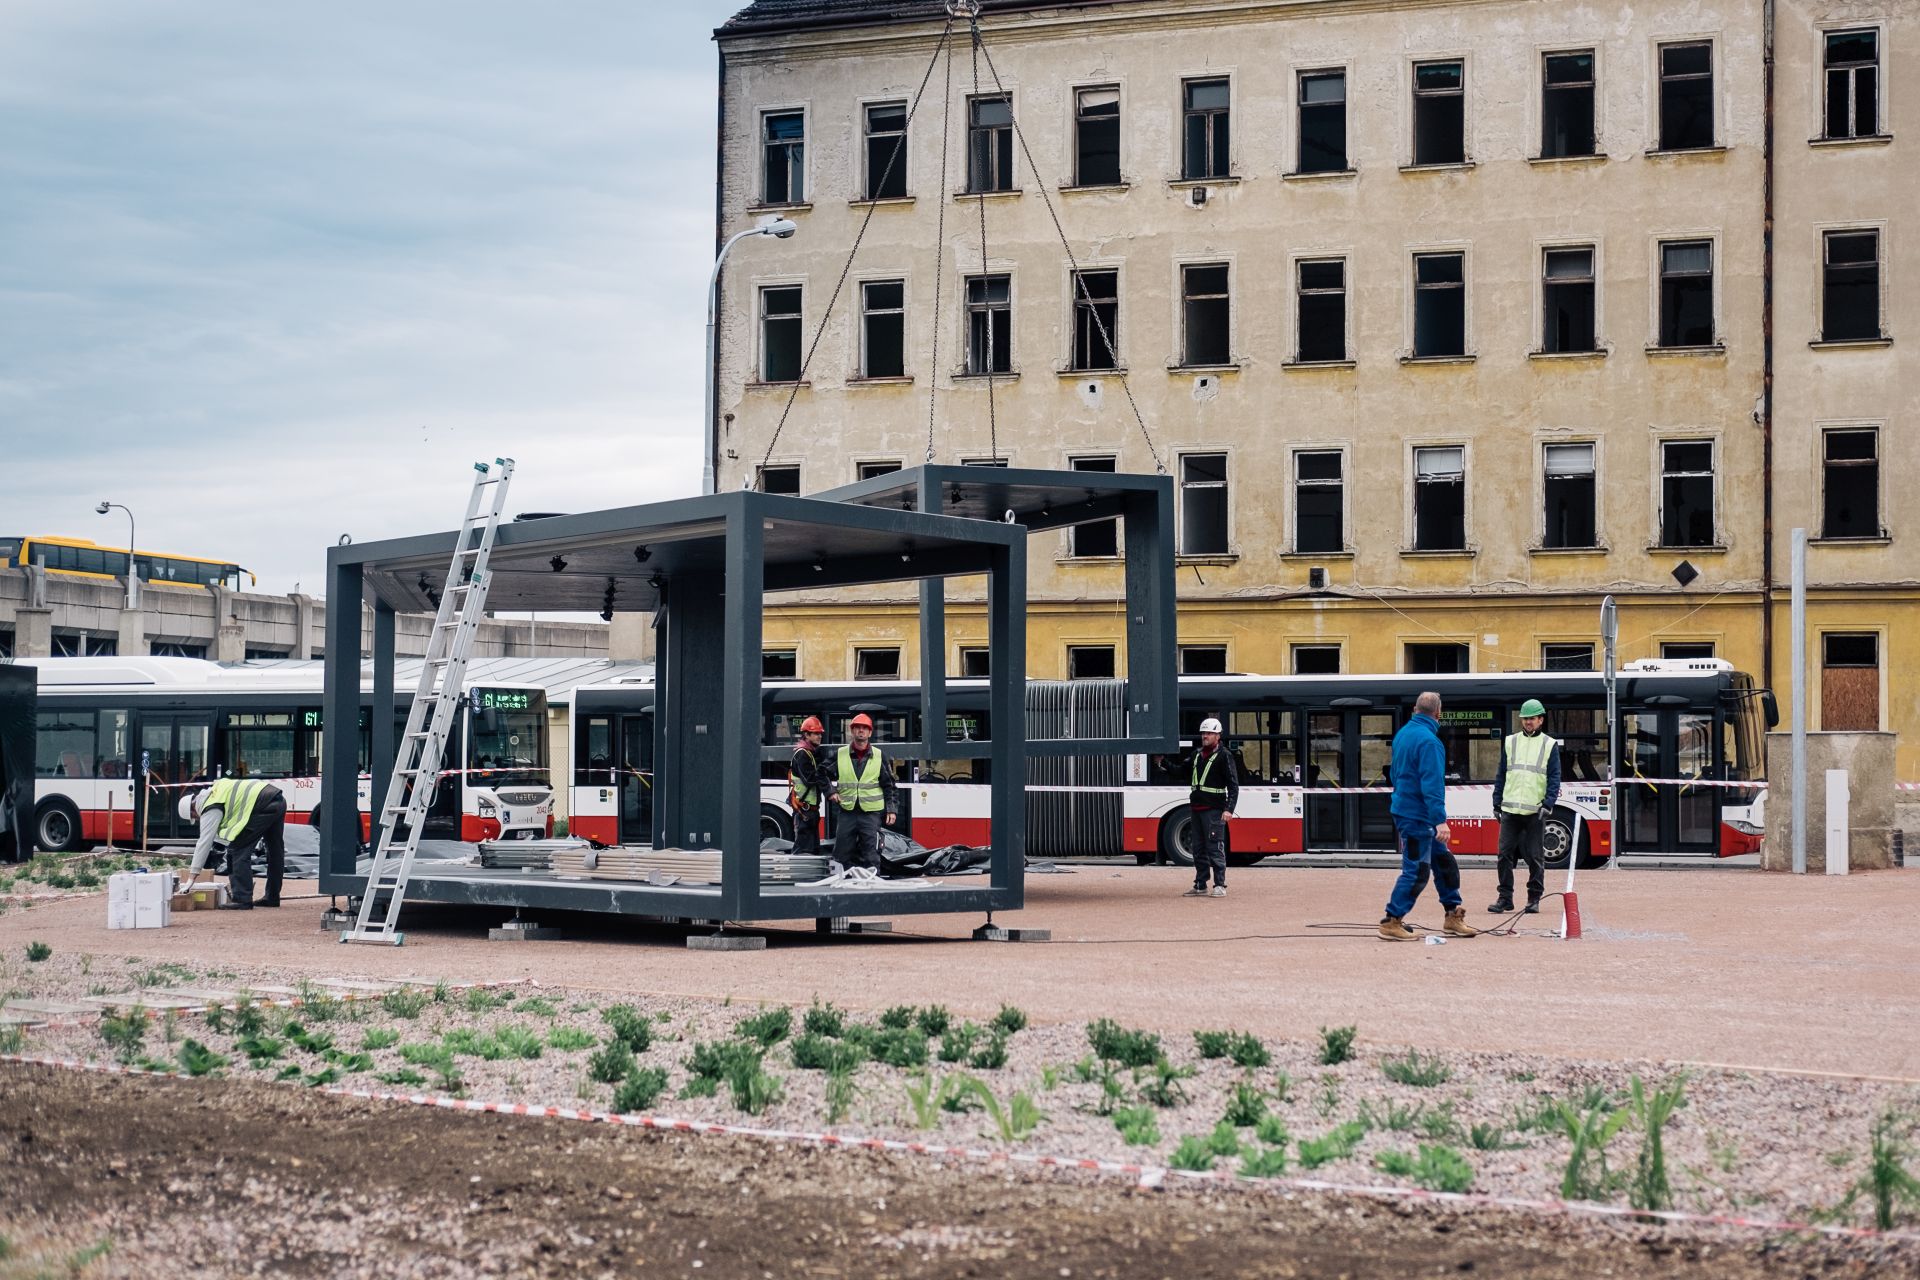 Kontejnerové čekárny před dolním nádražím v Brně. Autor: KAM Brno/Marieta Malíková